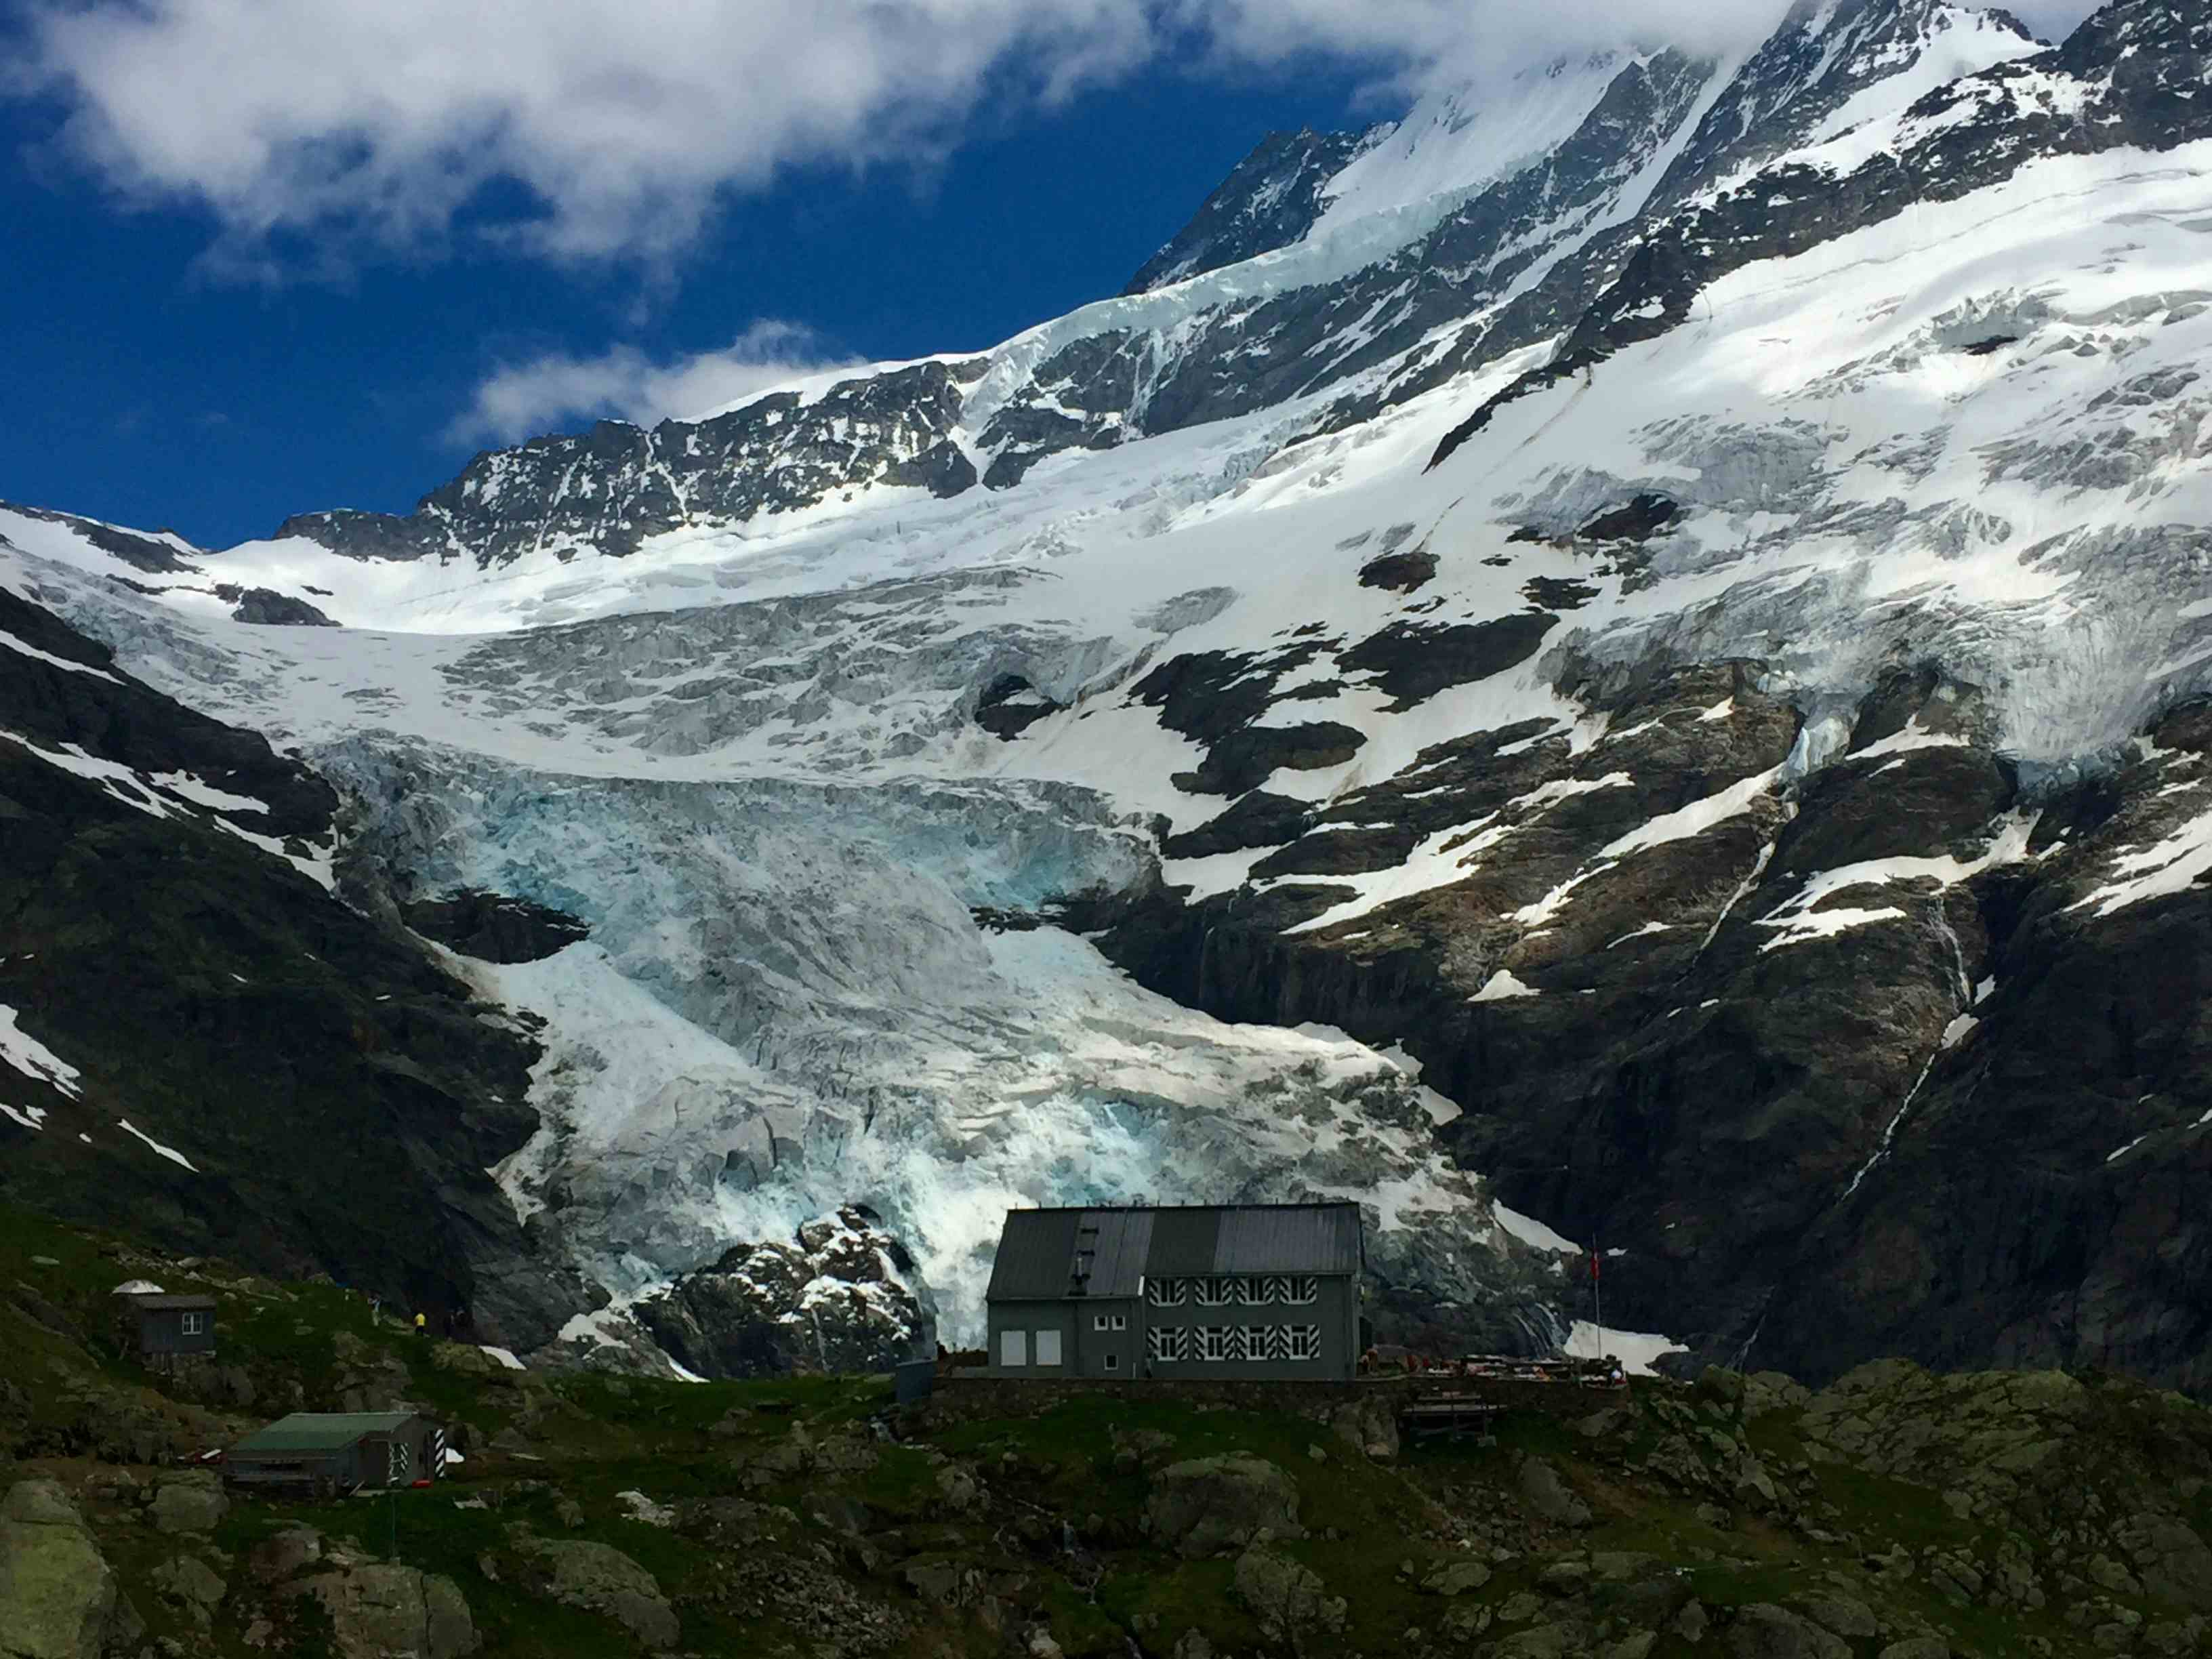 Die Glecksteinhütte vor dem Oberen Grindelwaldgletscher